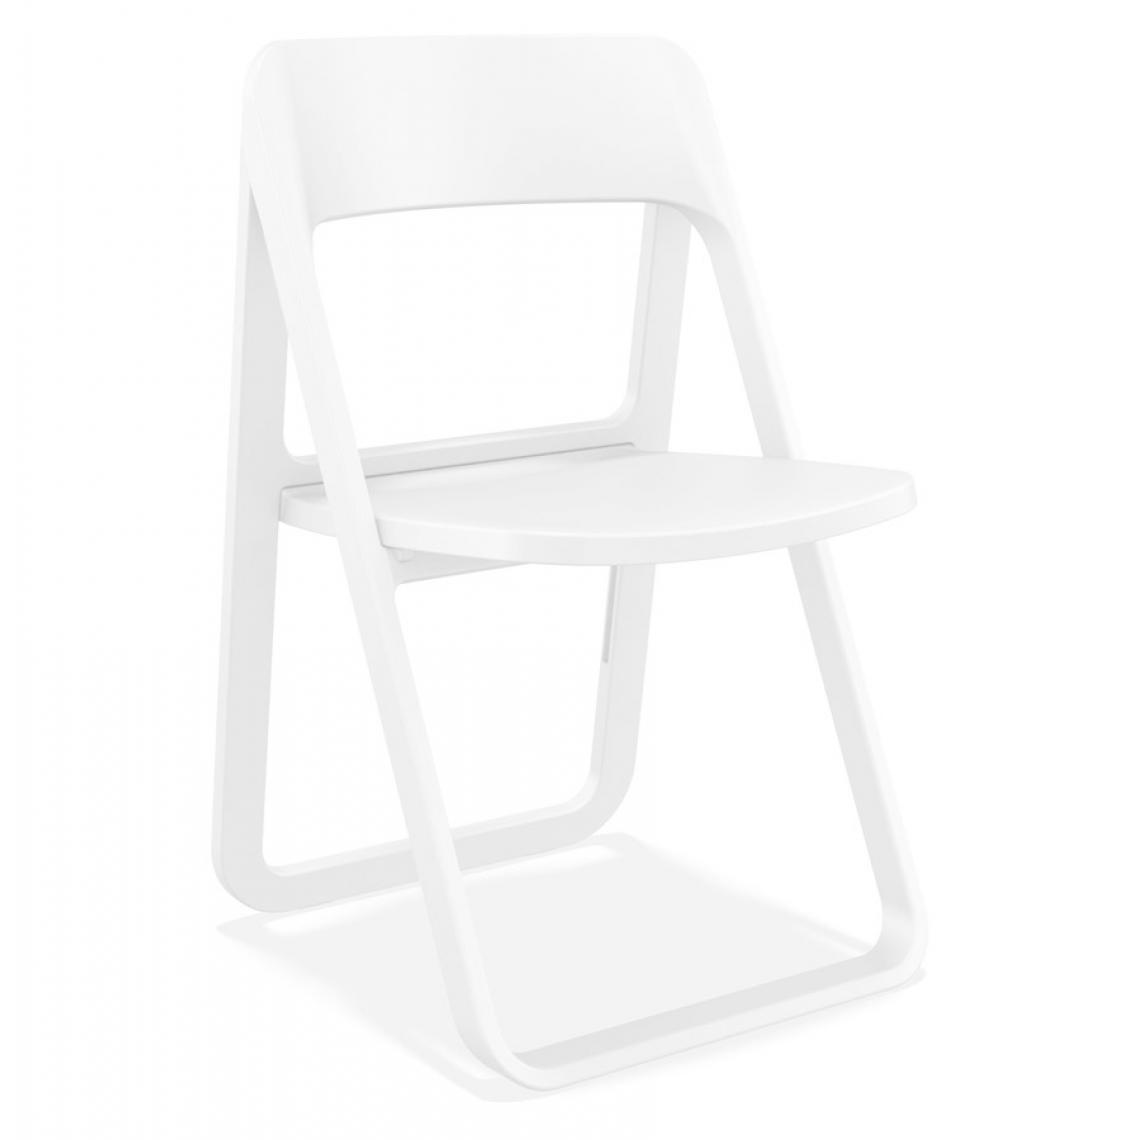 Alterego - Chaise pliable intérieur / extérieur 'SLAG' en matière plastique blanche - Chaises